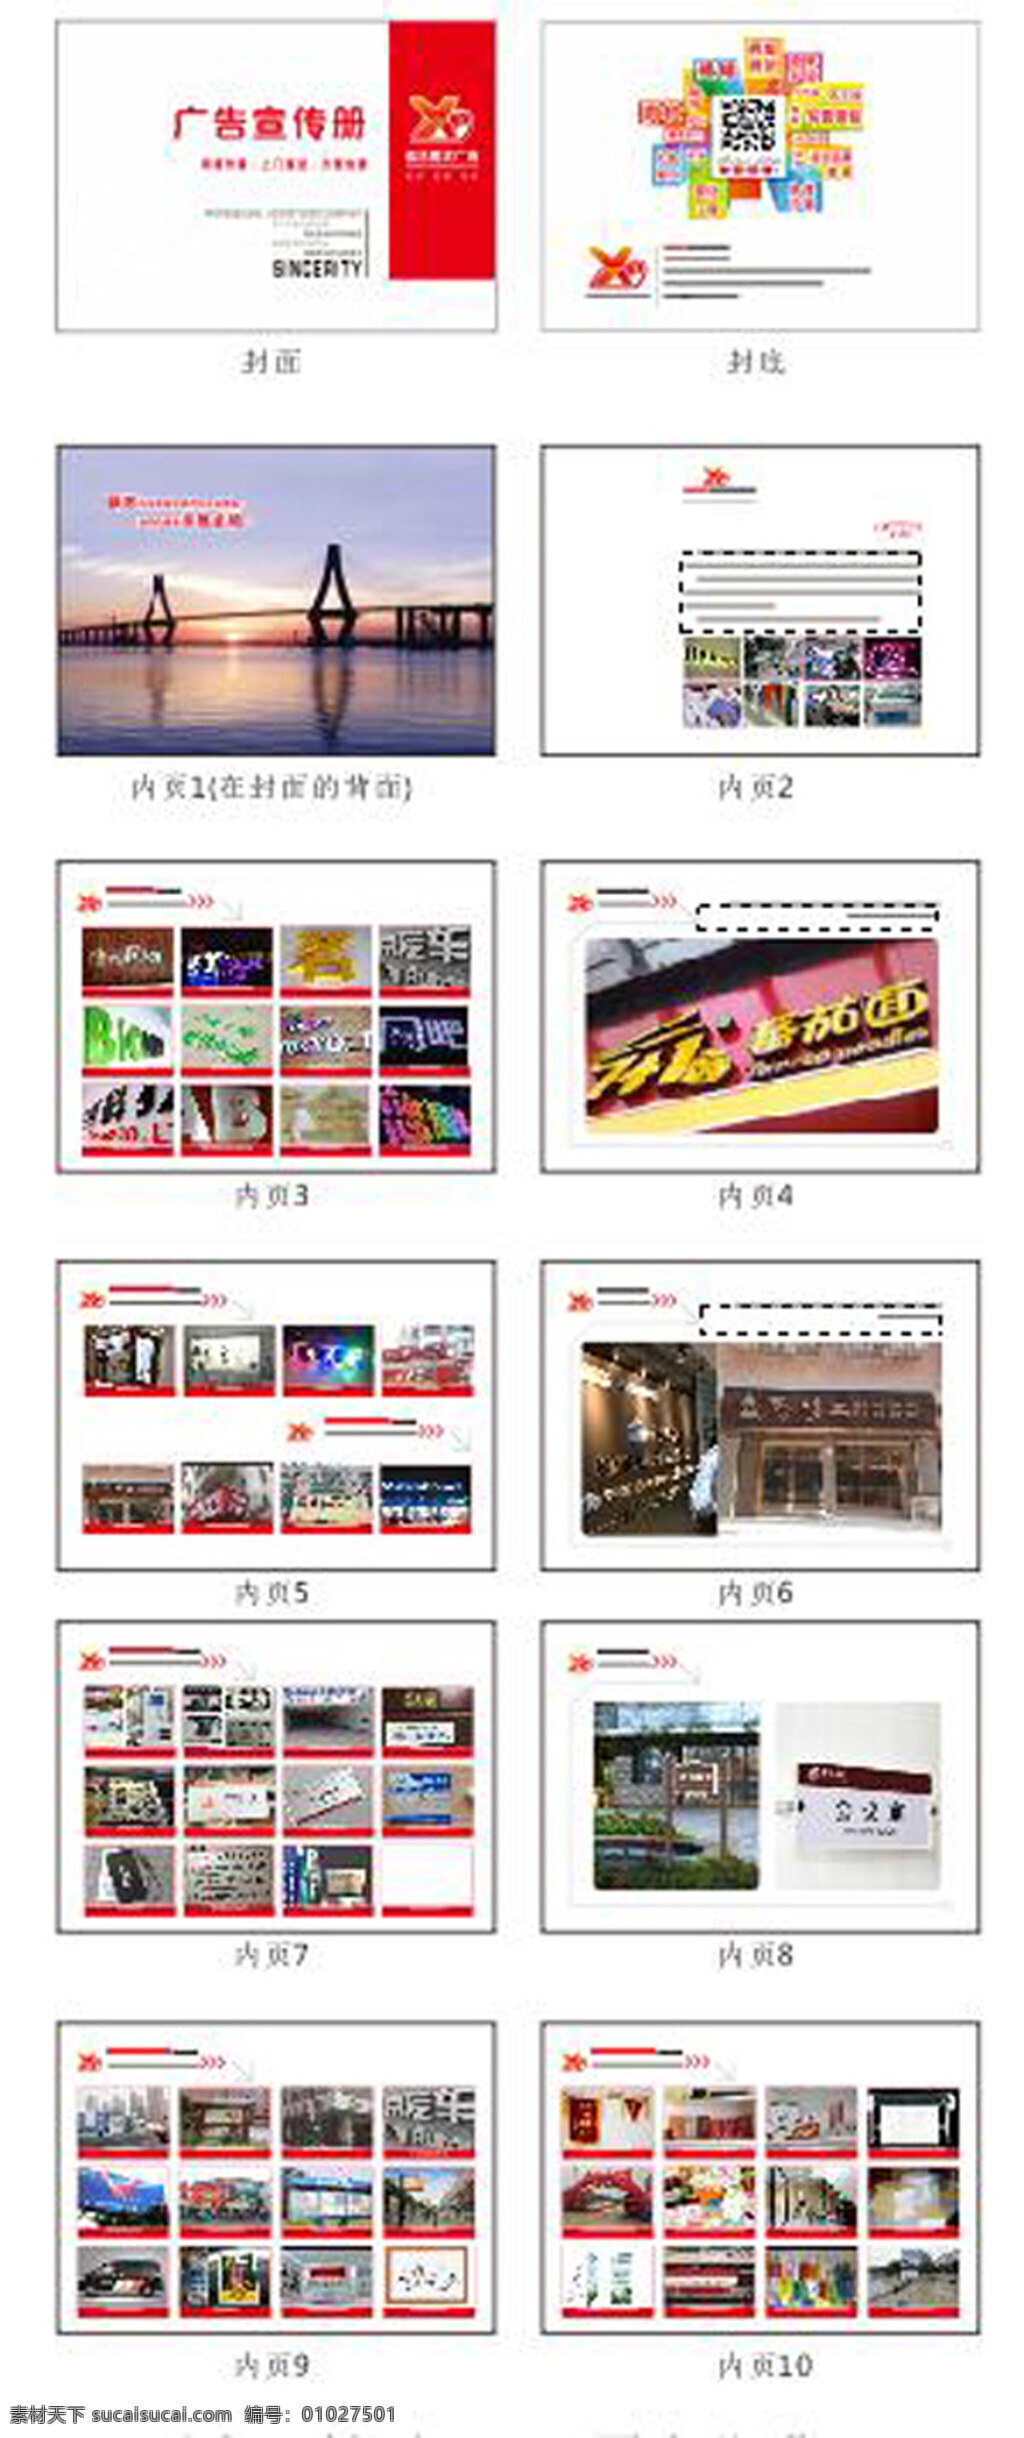 信达 图文 广告 画册 宣传册 广告公司画册 信达图文 广告画册